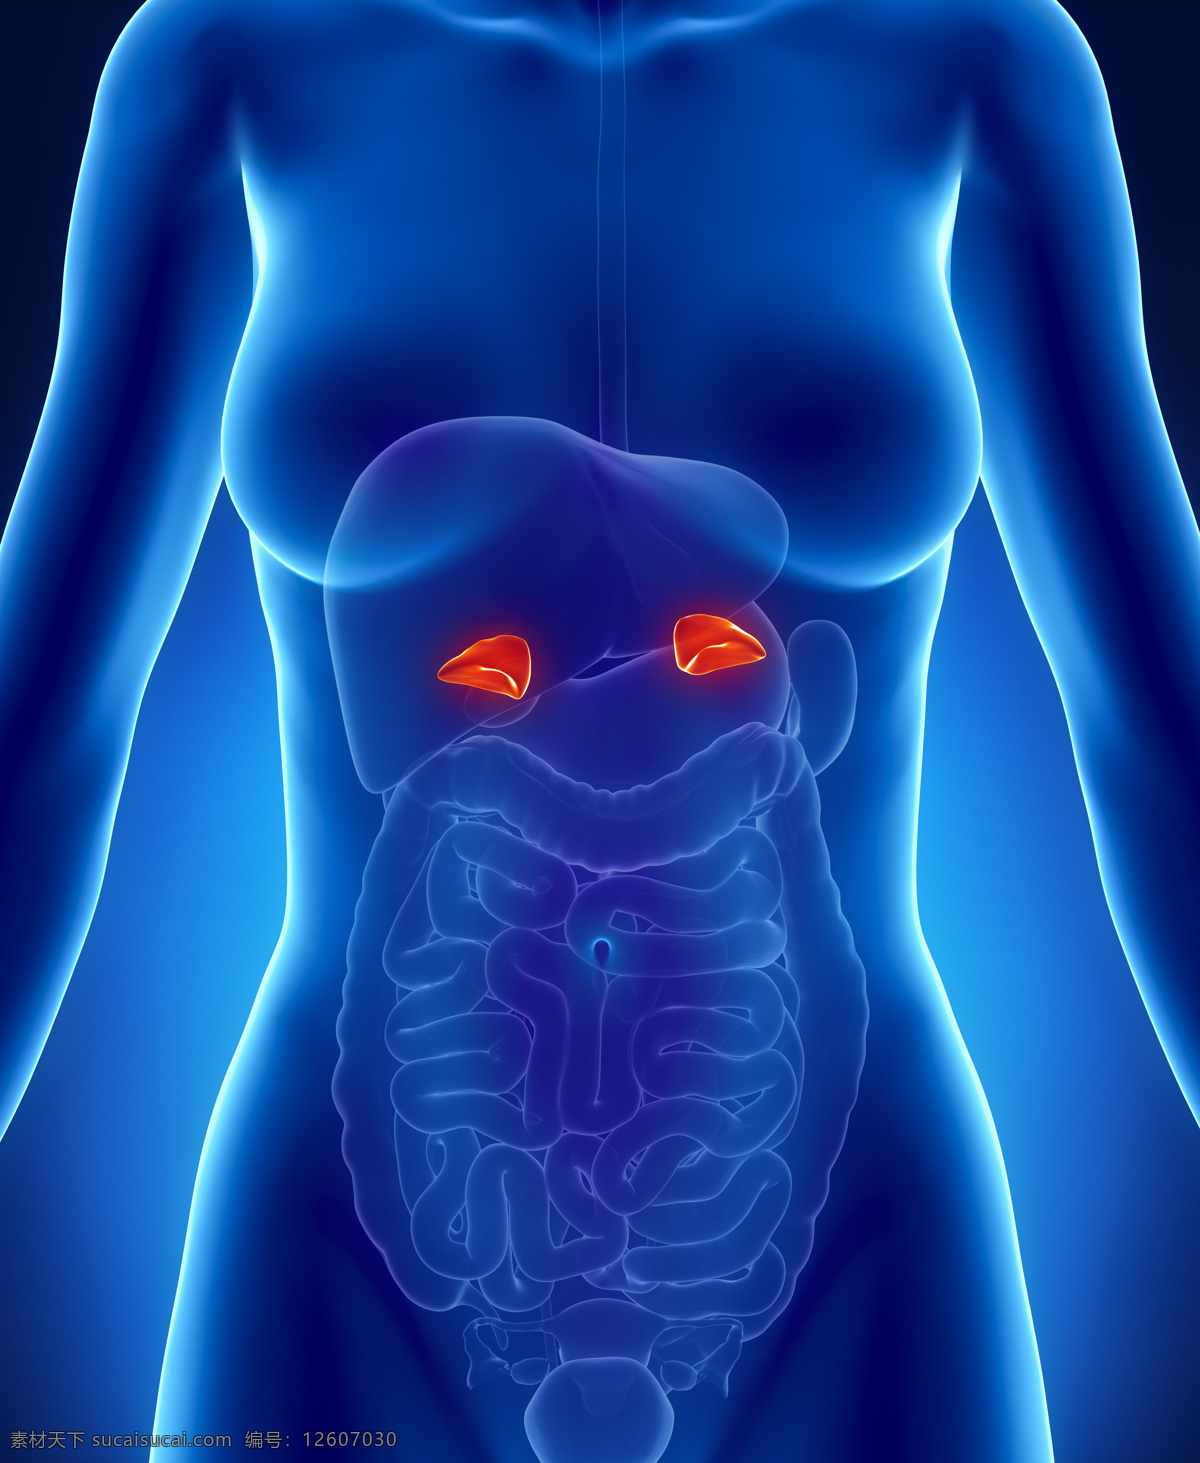 女性 内脏 肠胃 器官 女性器官 肝脏器官 肠胃器官 人体器官 医疗科学 医学 人体器官图 人物图片